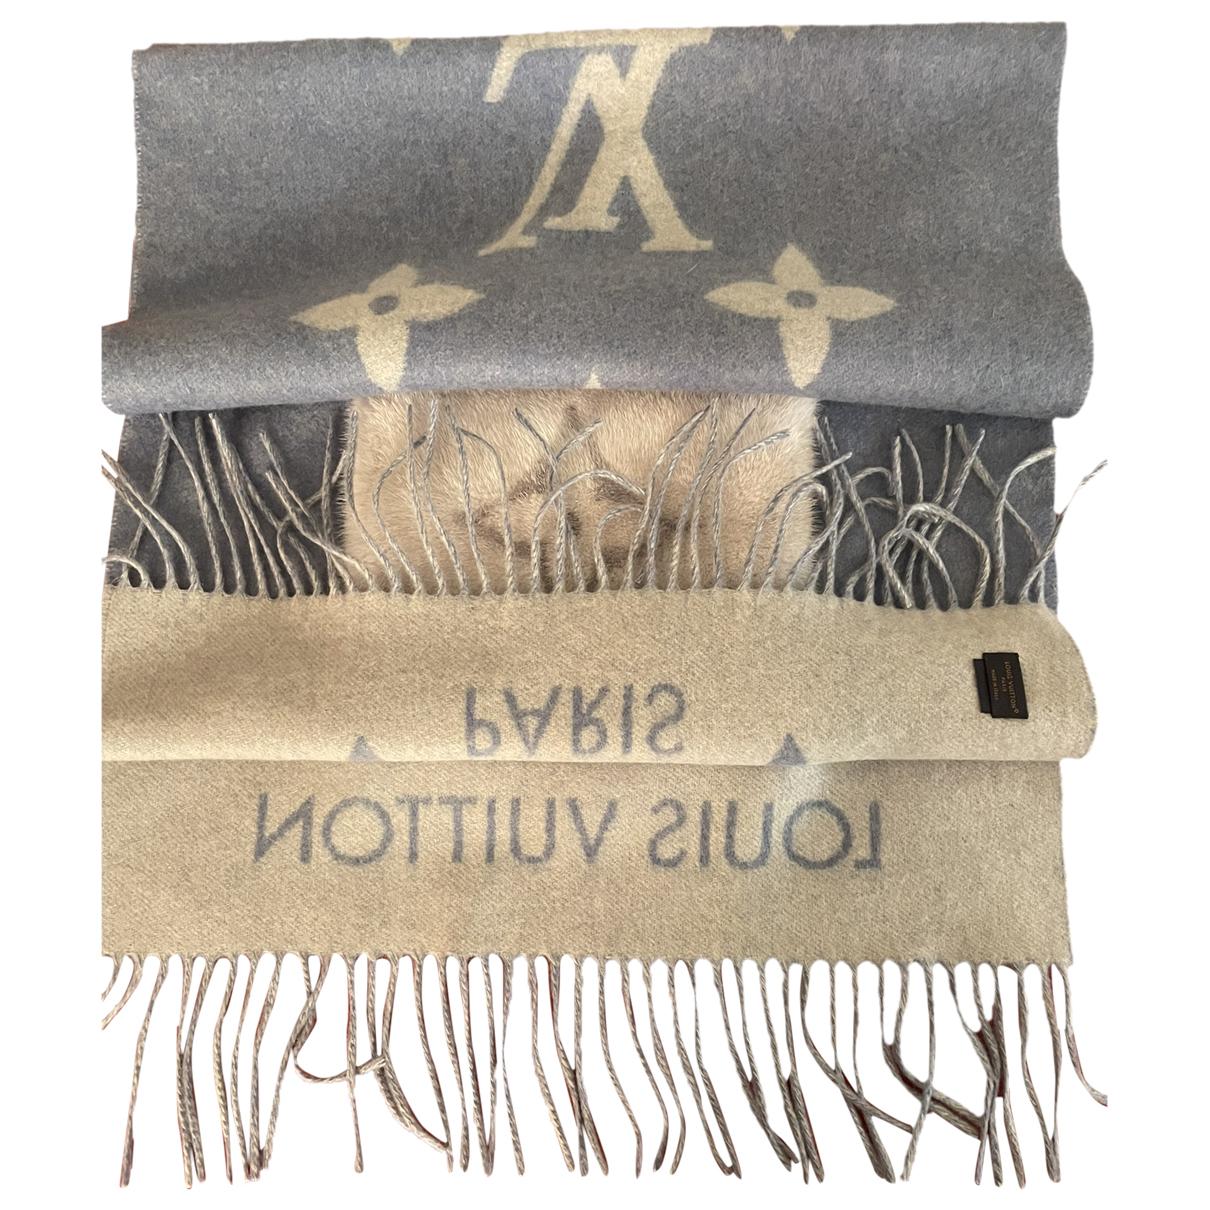 Reykjavik cashmere scarf Louis Vuitton Beige in Cashmere - 29740003